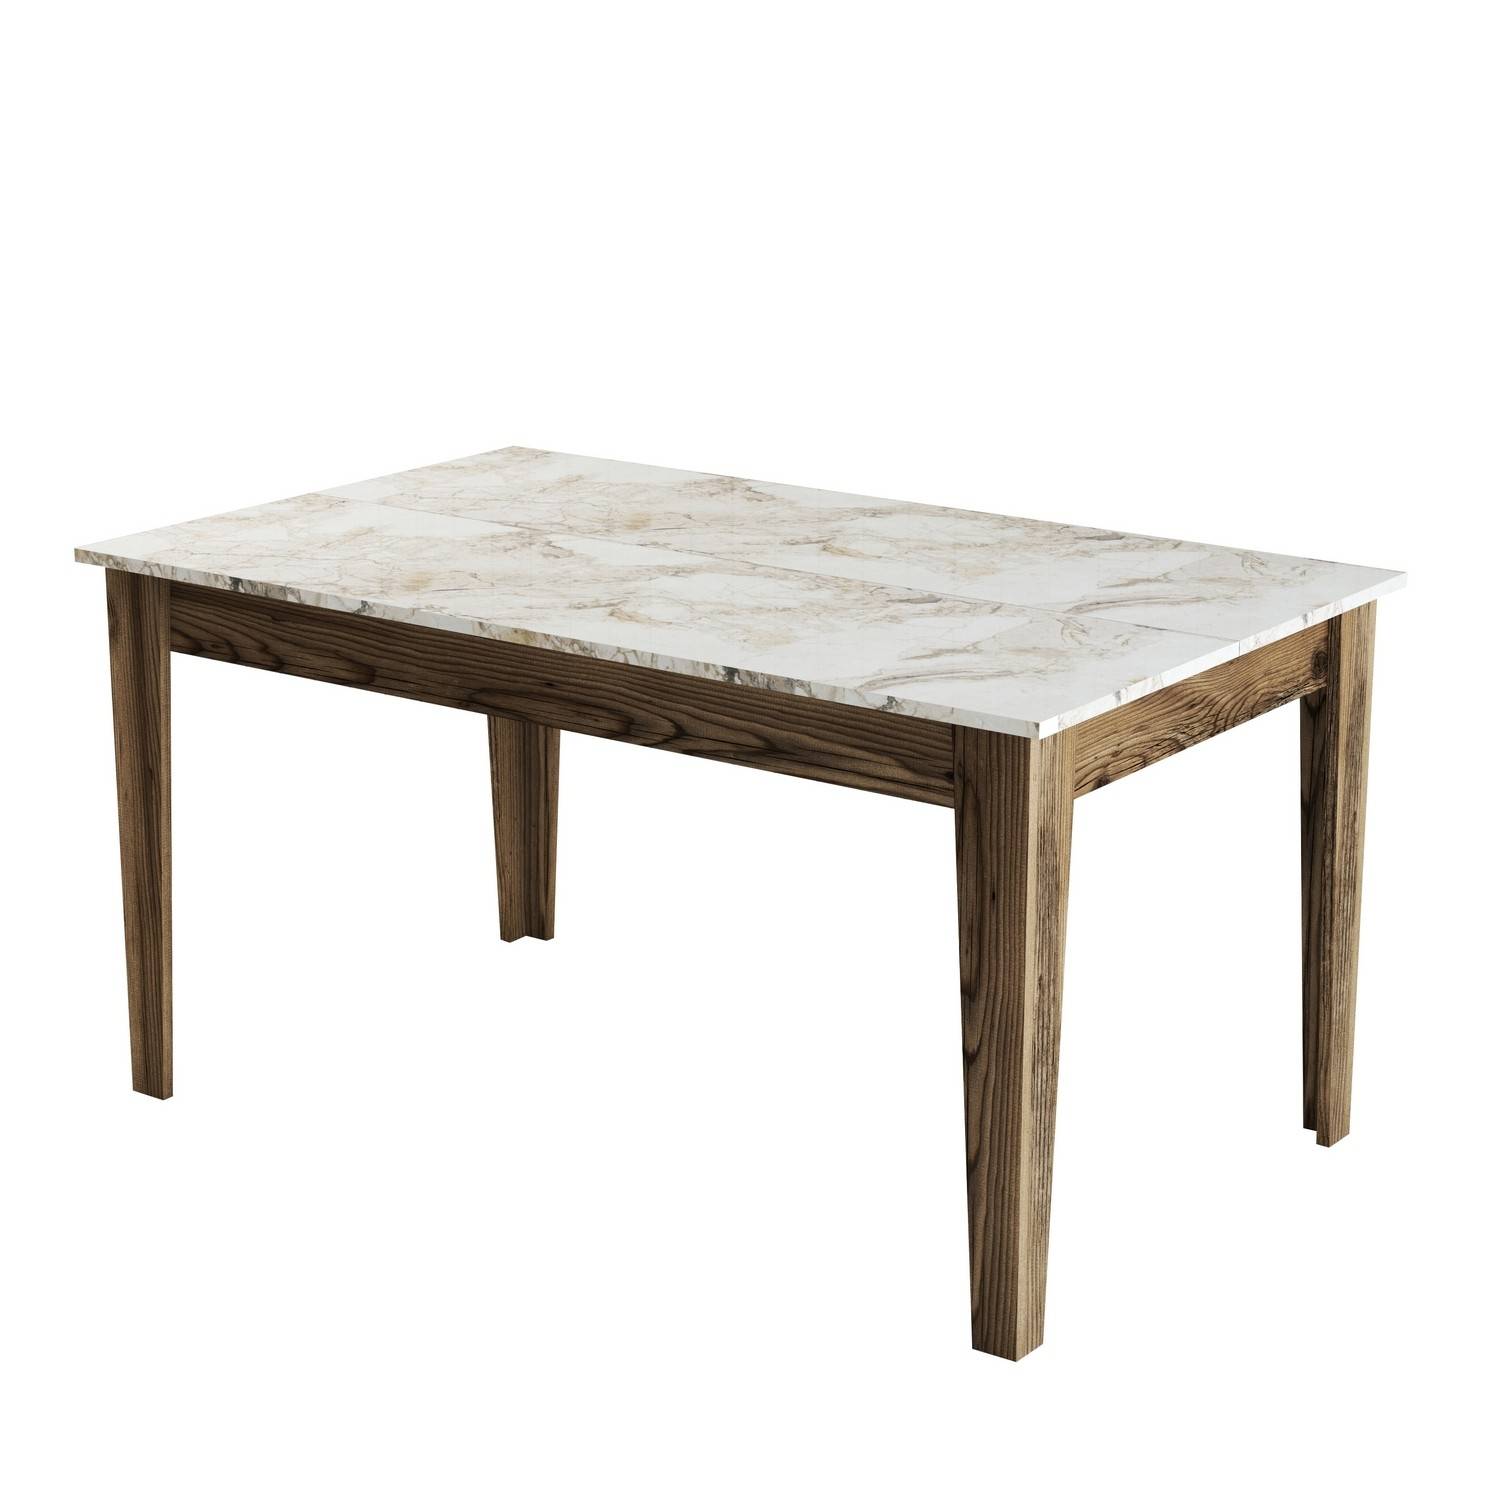 Tavolo da pranzo Kaltes con contenitore L145cm Effetto marmo bianco e legno